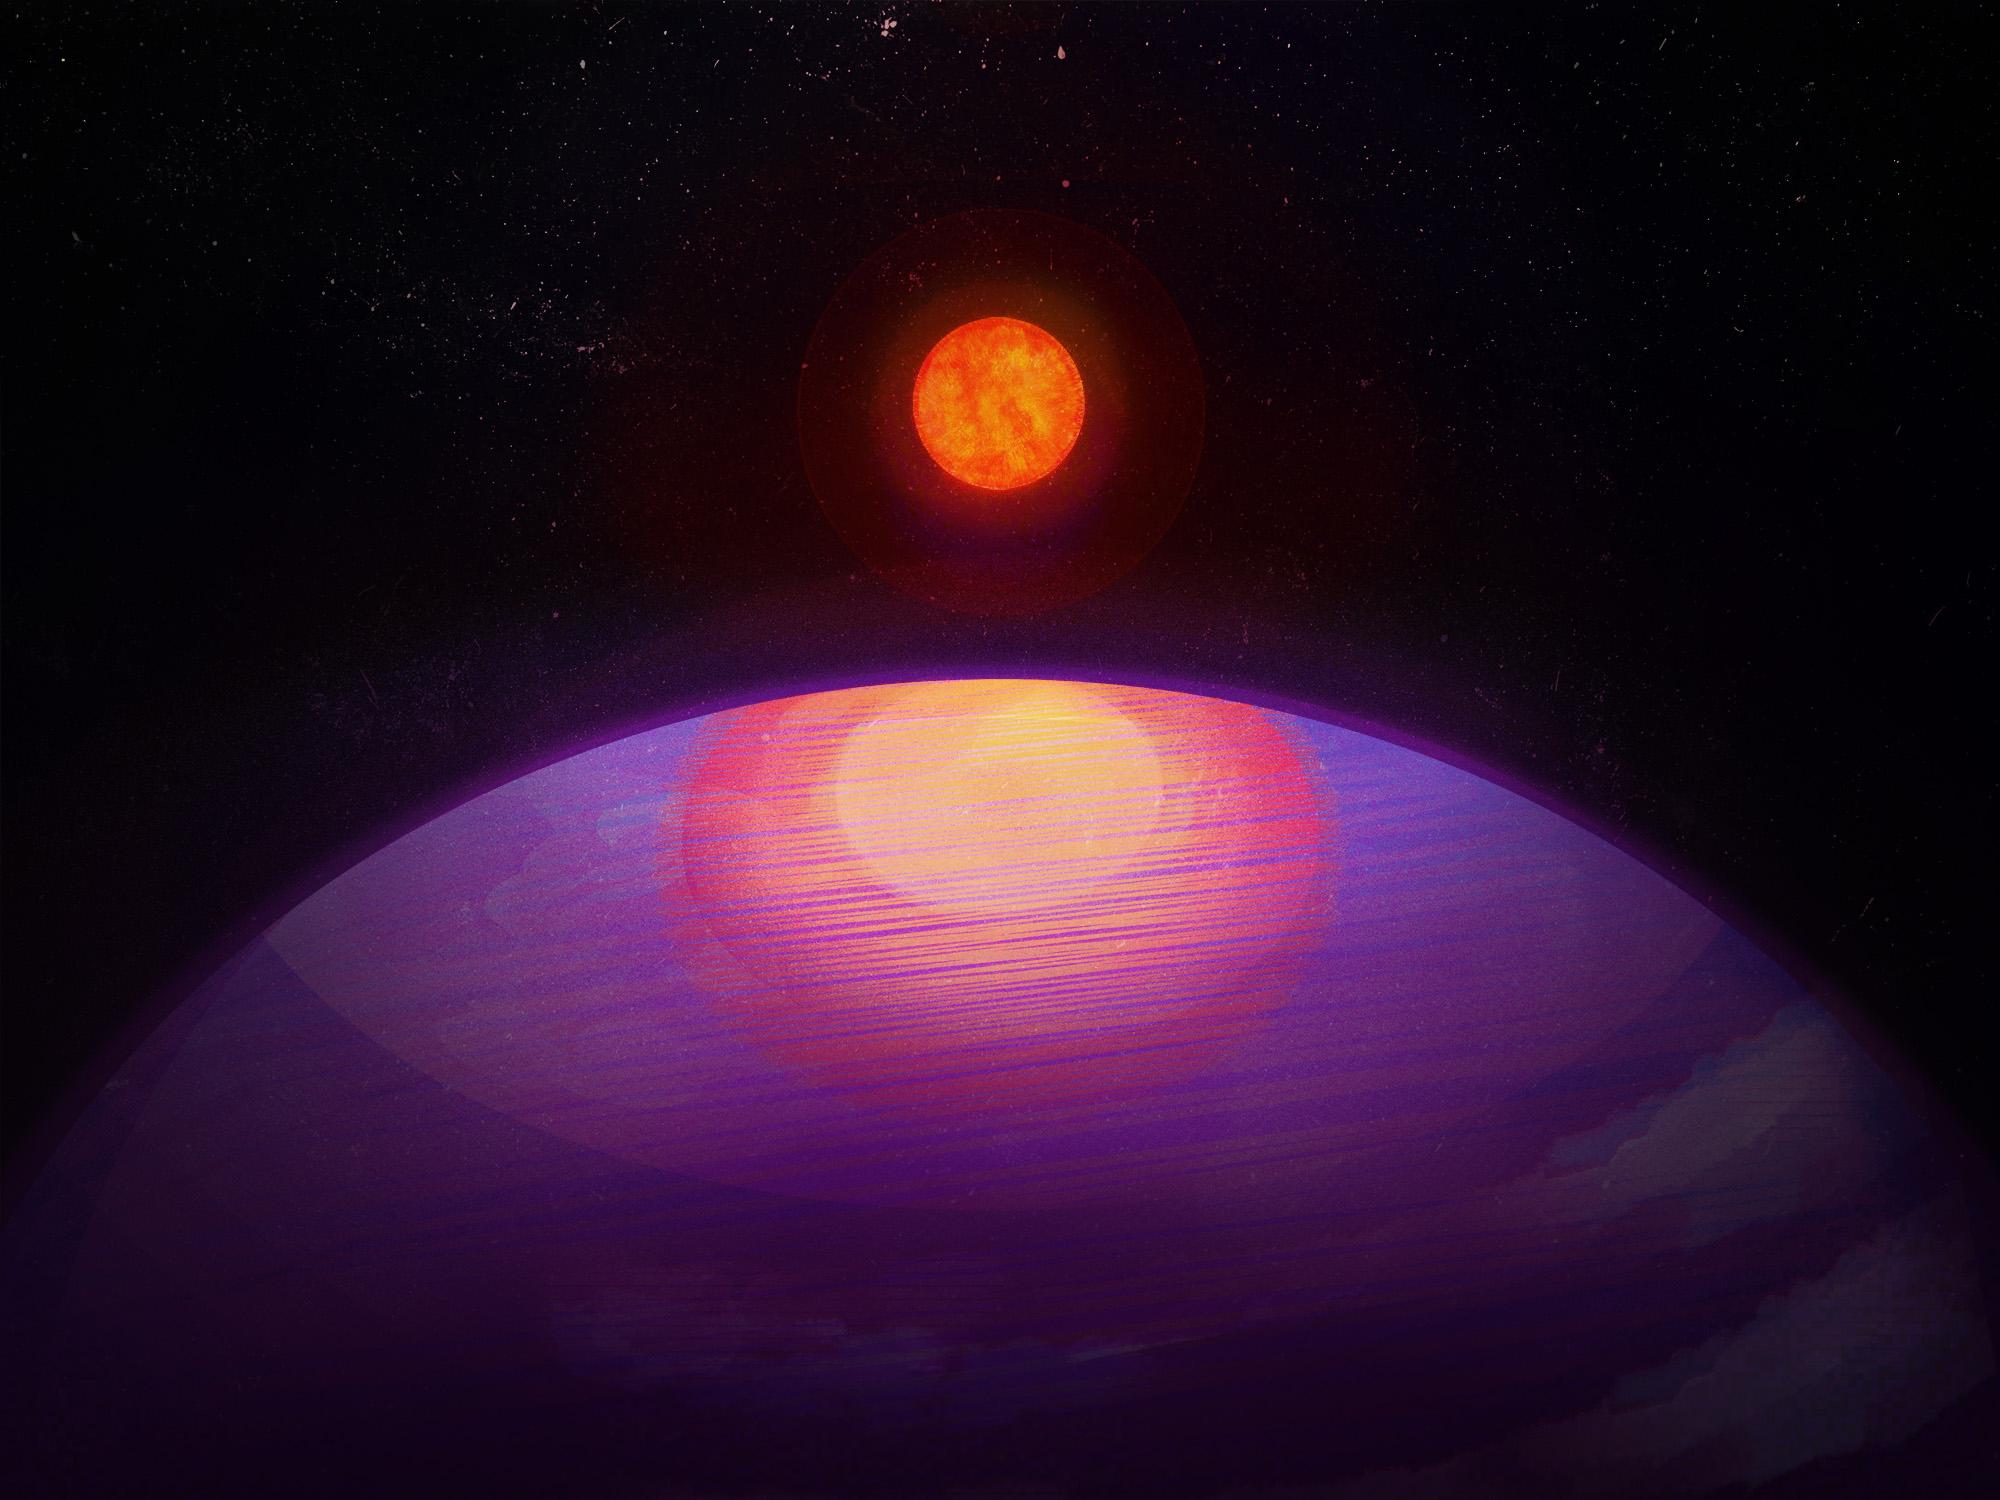 LHS 3154b, il pianeta che ha sorpreso gli scienziati: ‘Non dovrebbe esistere’